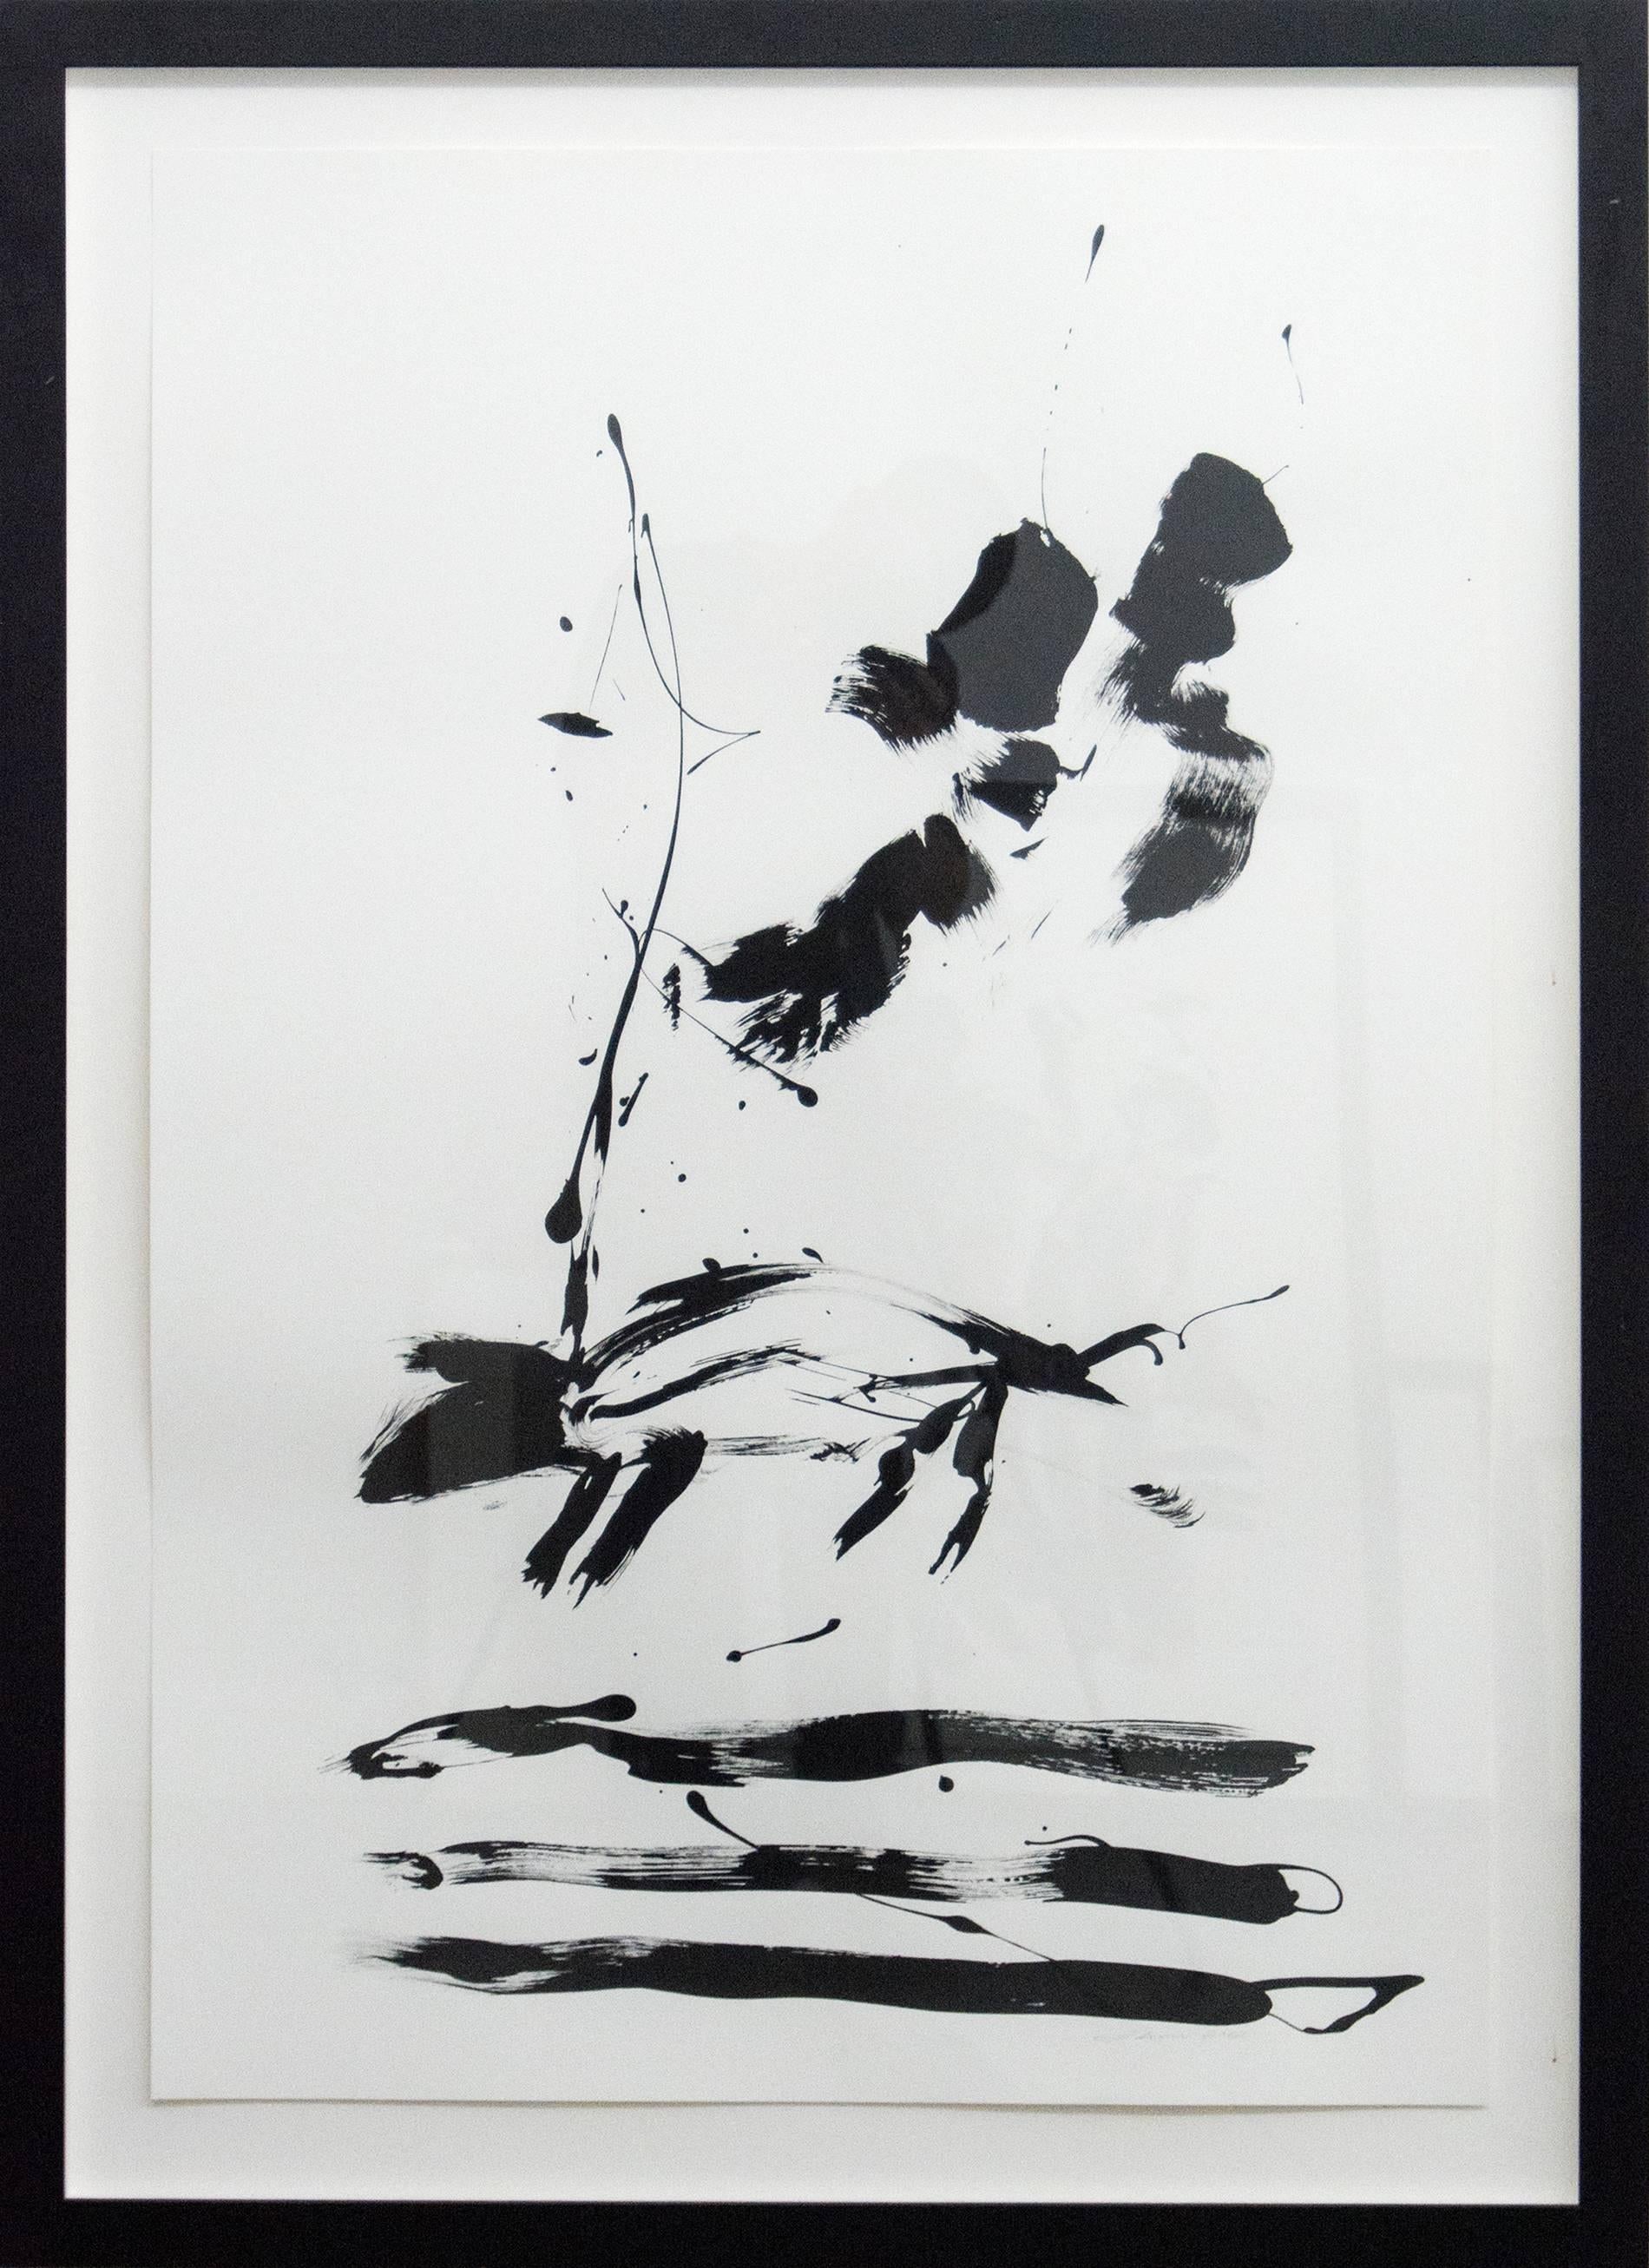 Off the Leash - noir et blanc, minimaliste, abstrait figuratif, encre sur papier